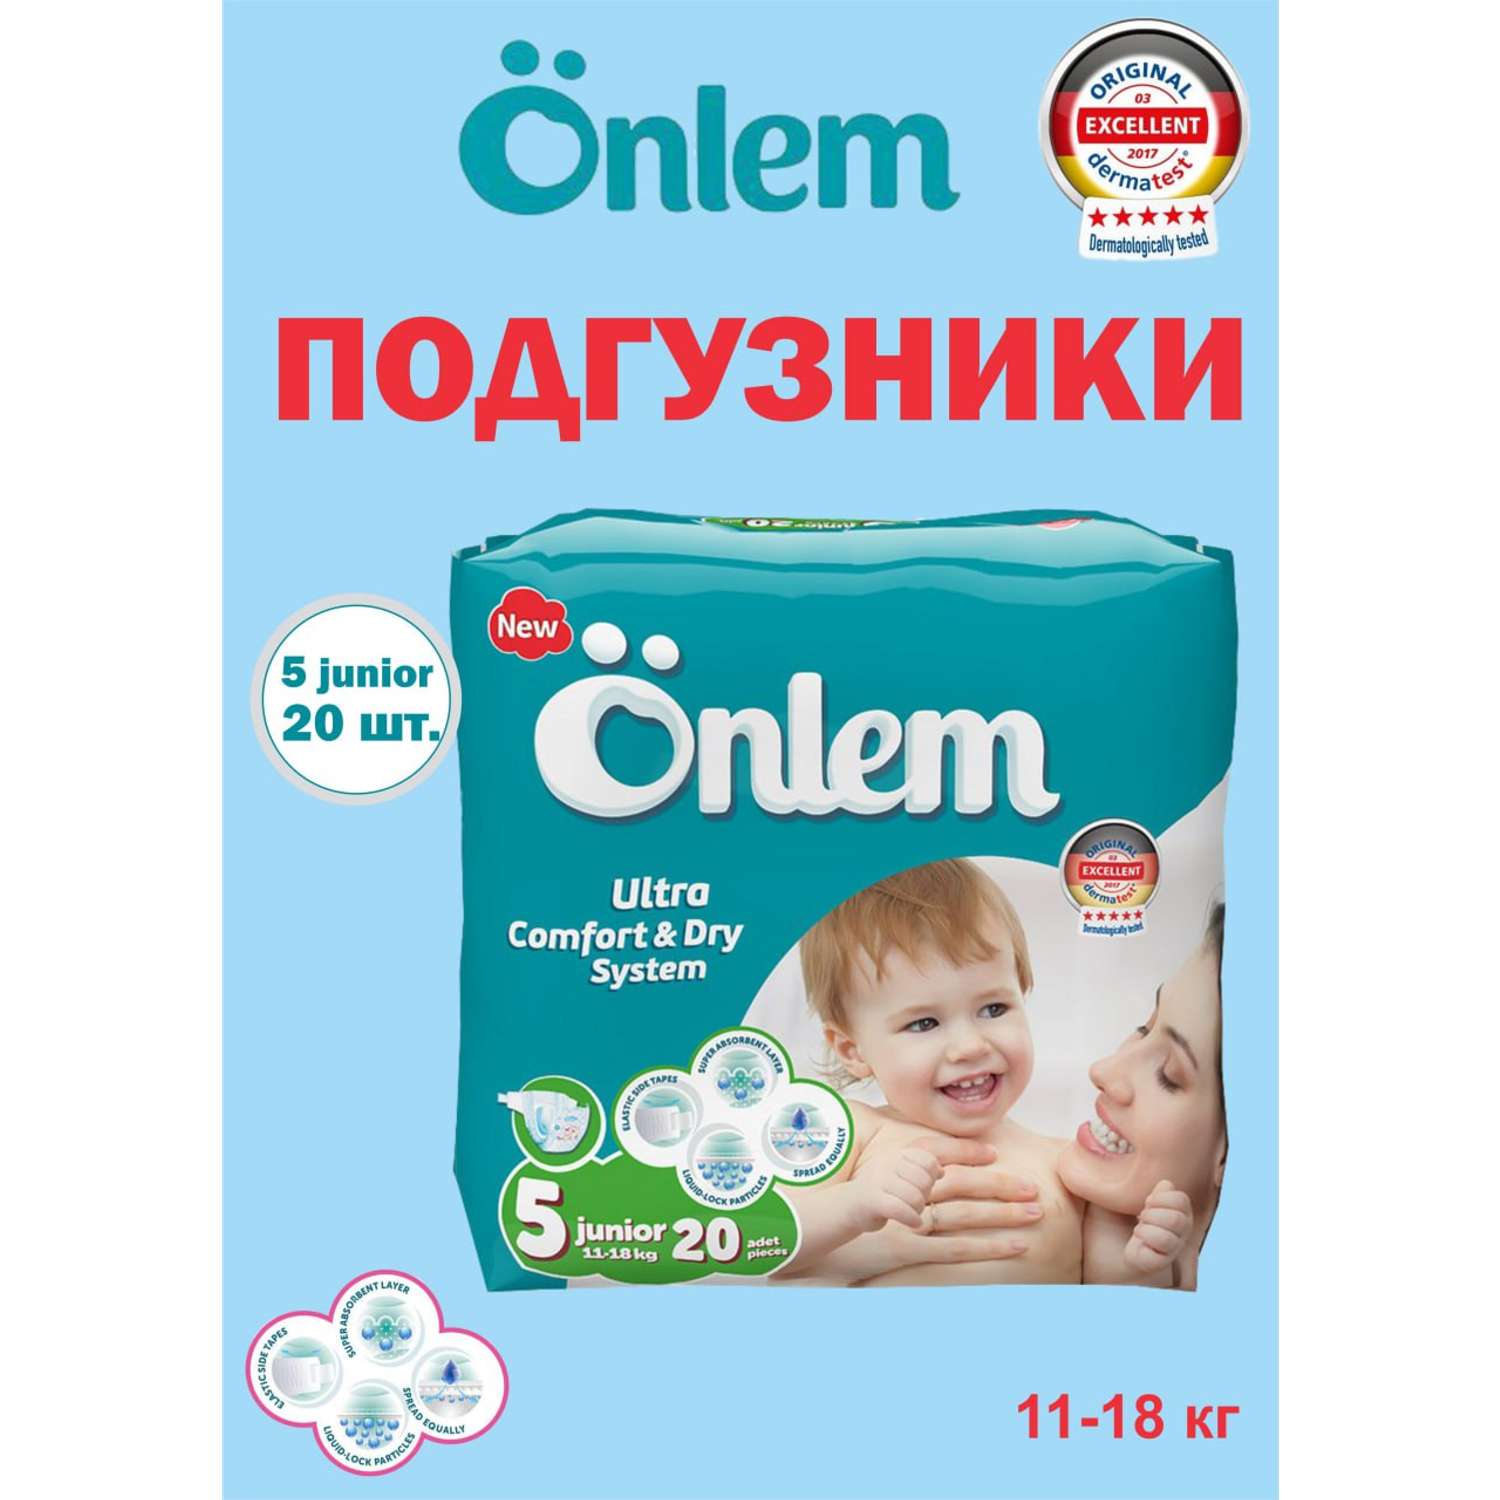 Детские подгузники Onlem Classik 5 (11-18 кг) advantage 20 шт в упаковке - фото 7